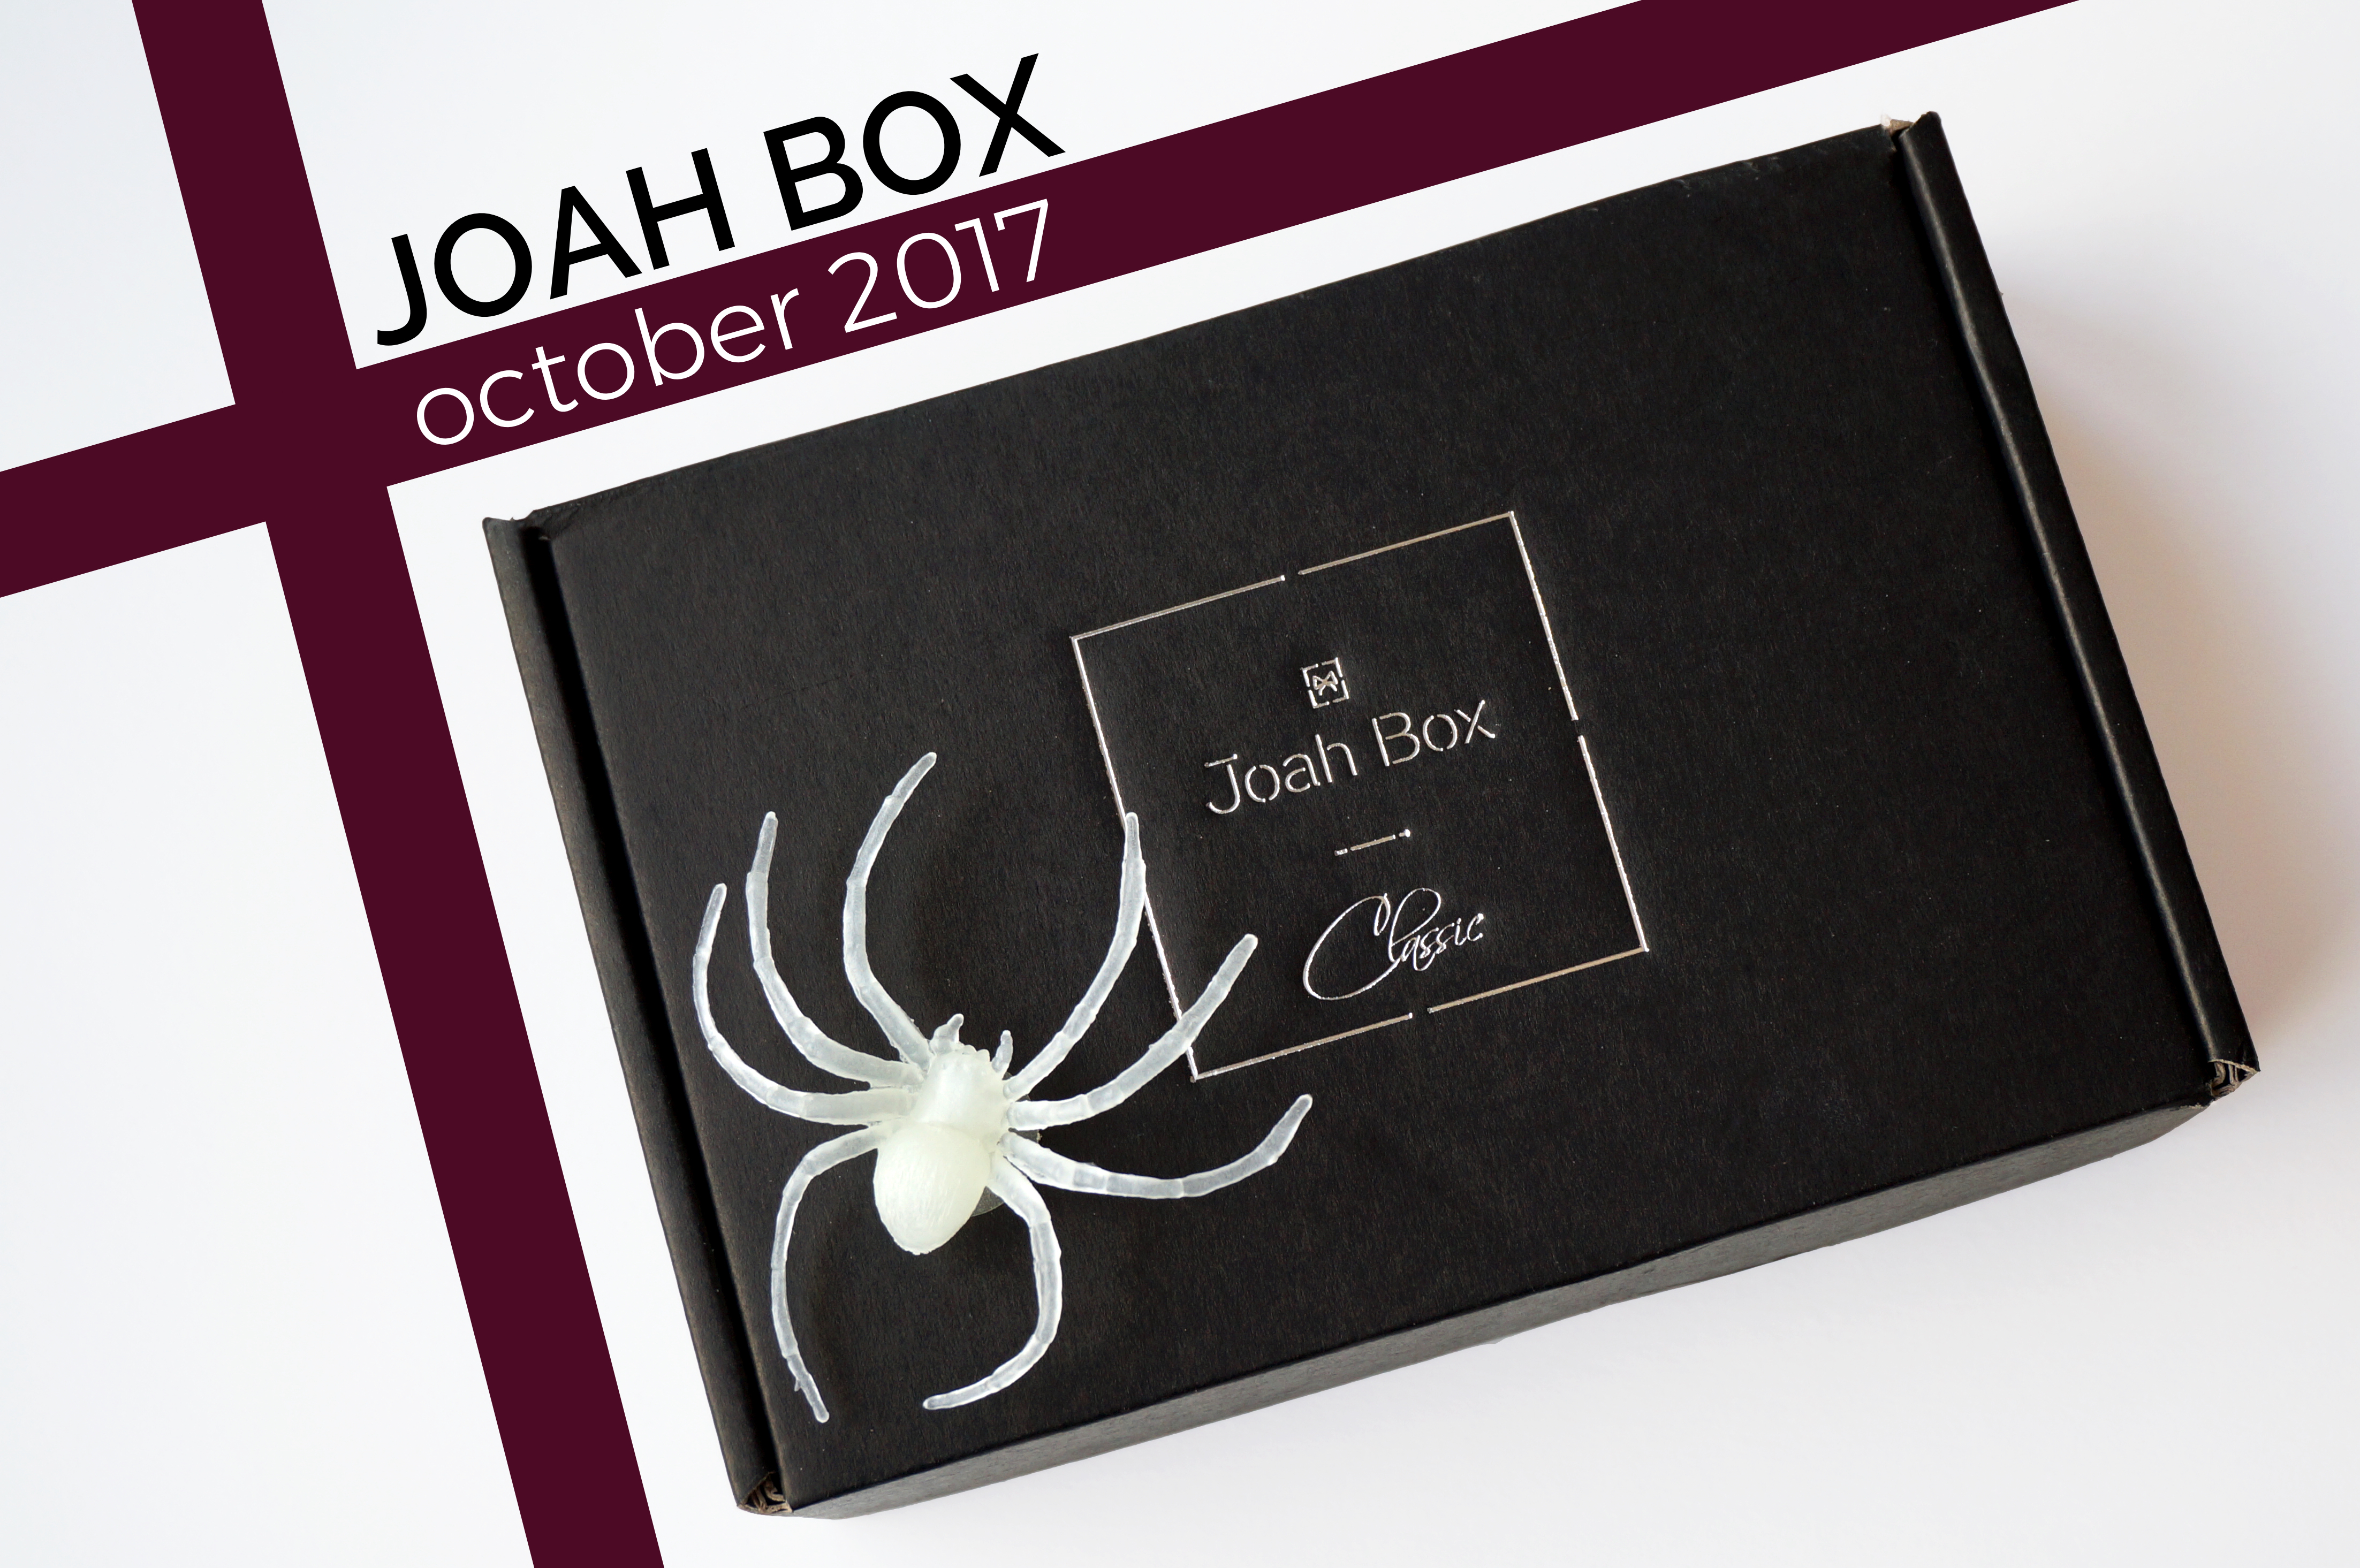 joah box october 2017